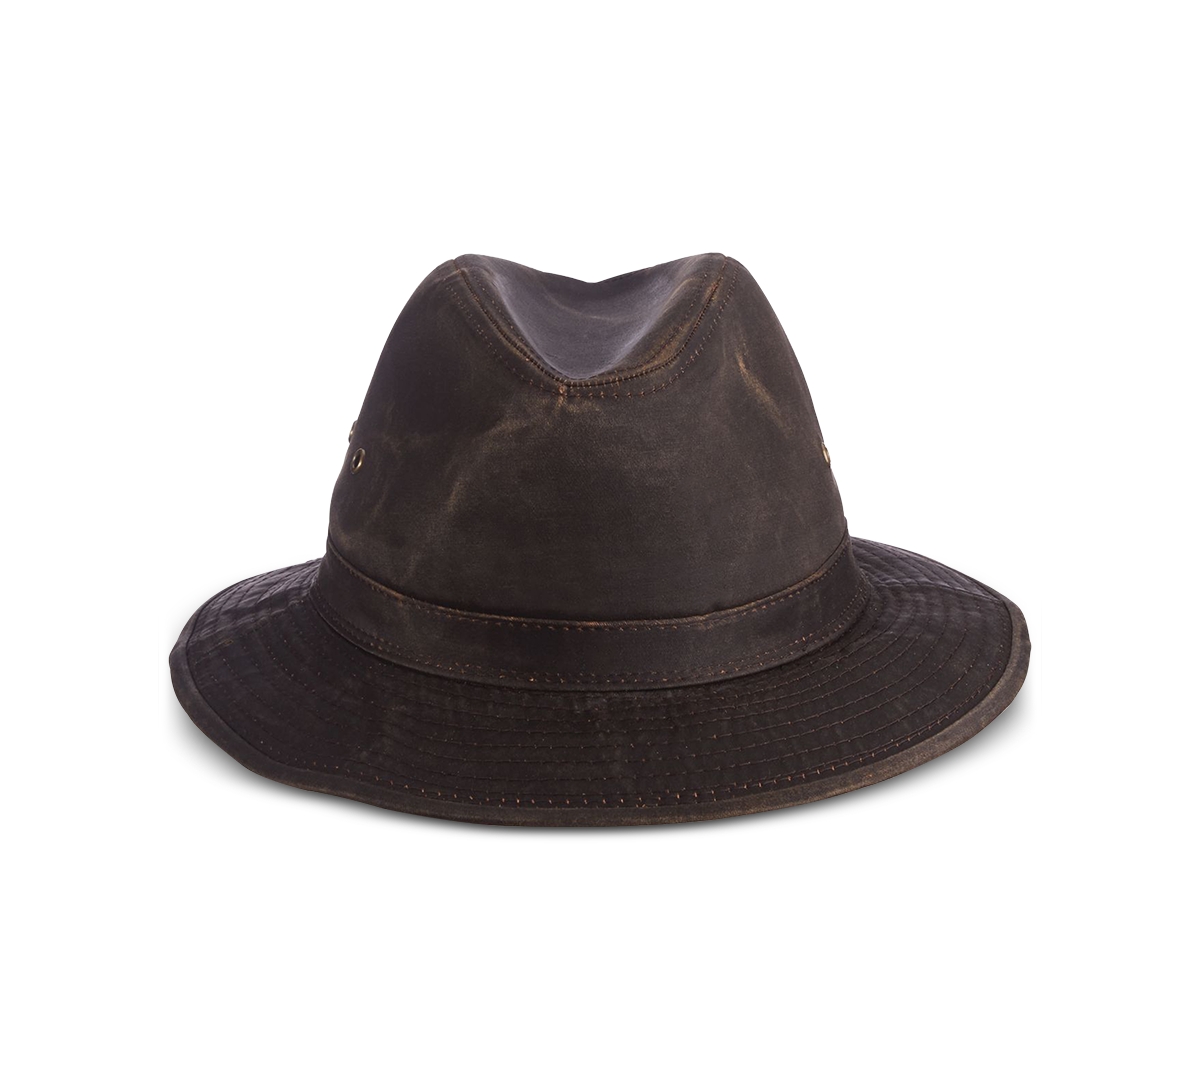 Men's Weathered Safari Hat - Brown